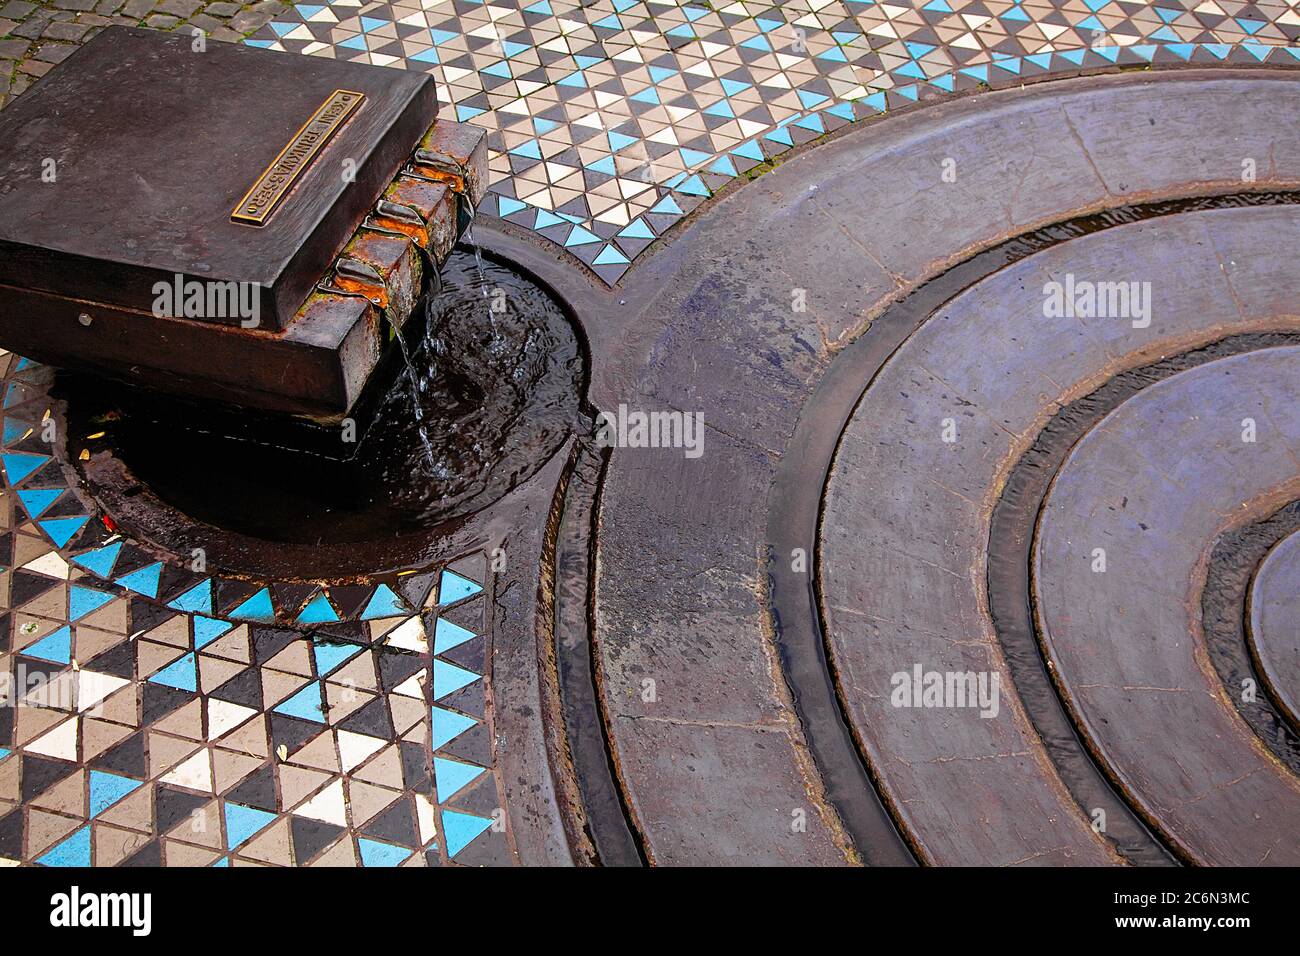 Teil des abstrakten Spiralbrunnens mit Mosaikboden, Draufsicht. Ungewöhnliche Orte in Deutschland. Stockfoto